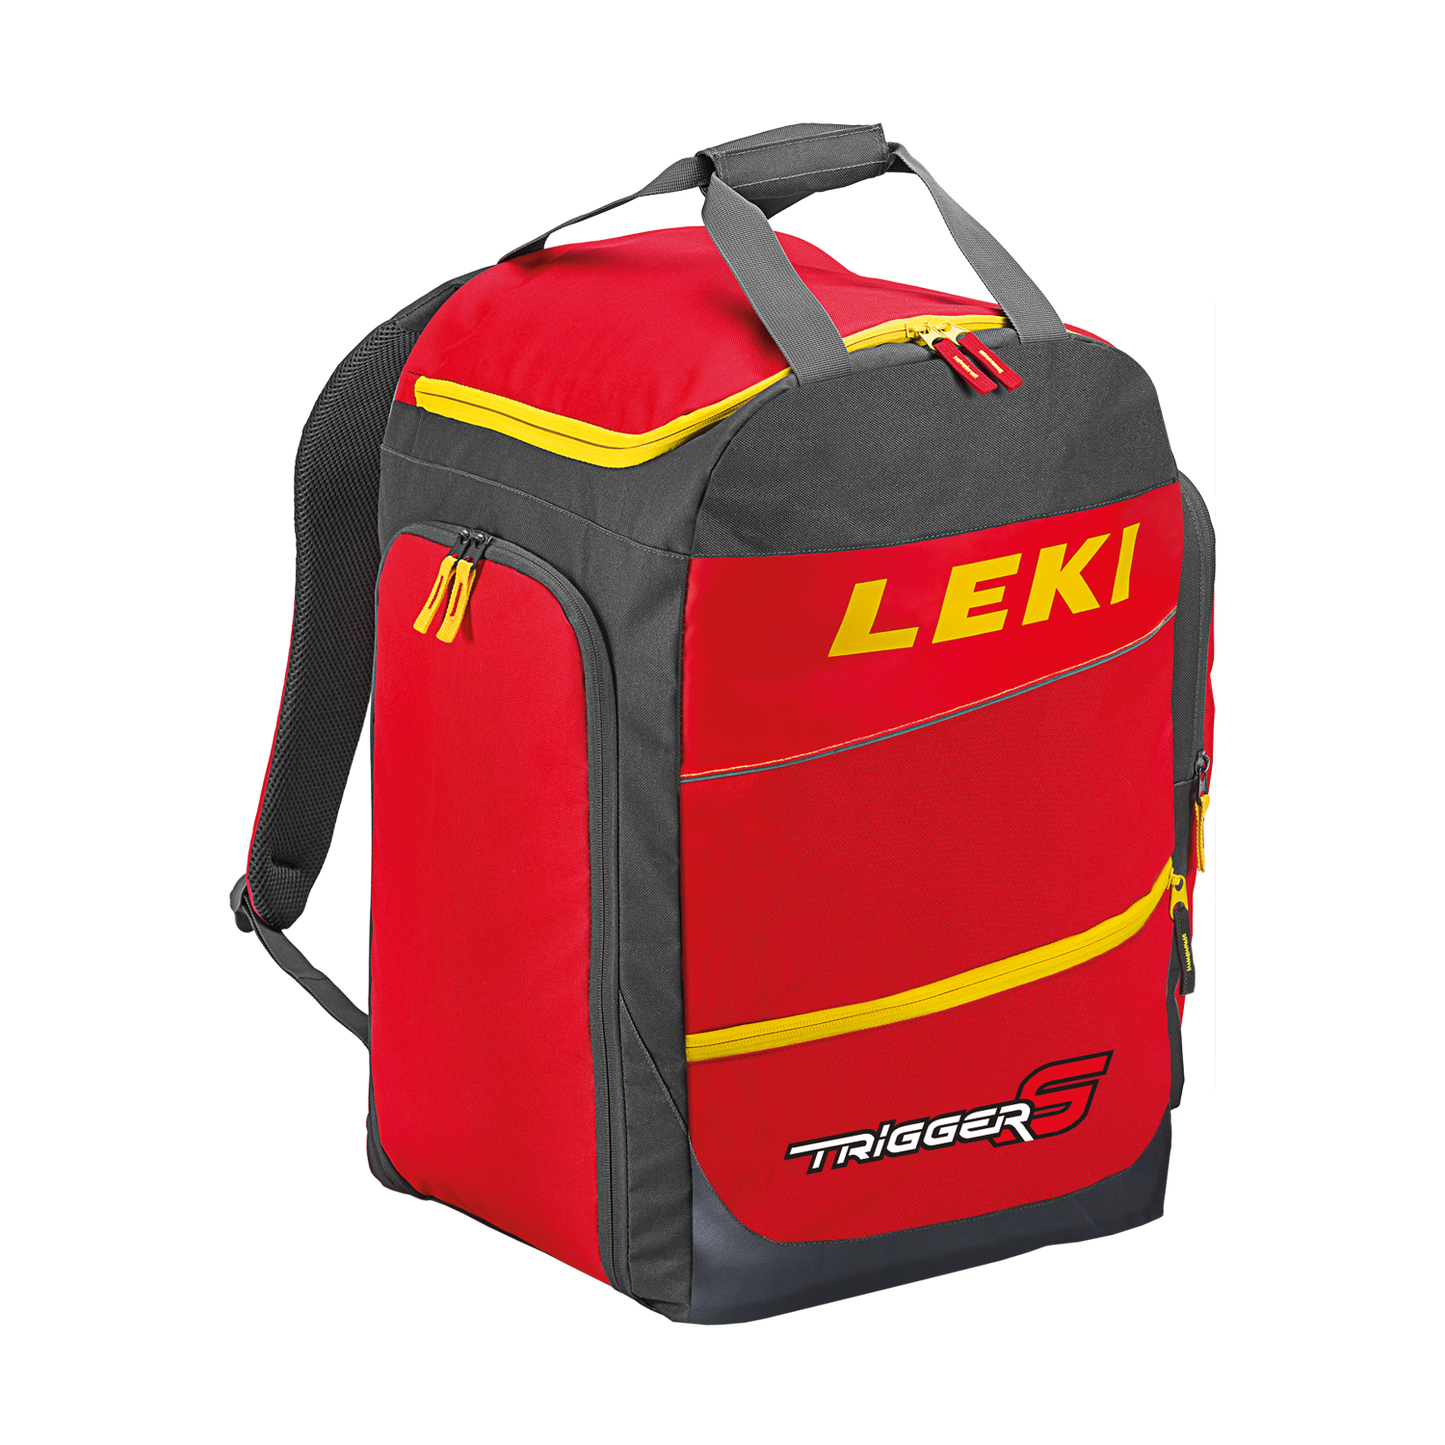 LEKI Ski Bootbag 360022006 Skischuhtasche Skistiefeltasche Rucksack 60l neu 2019